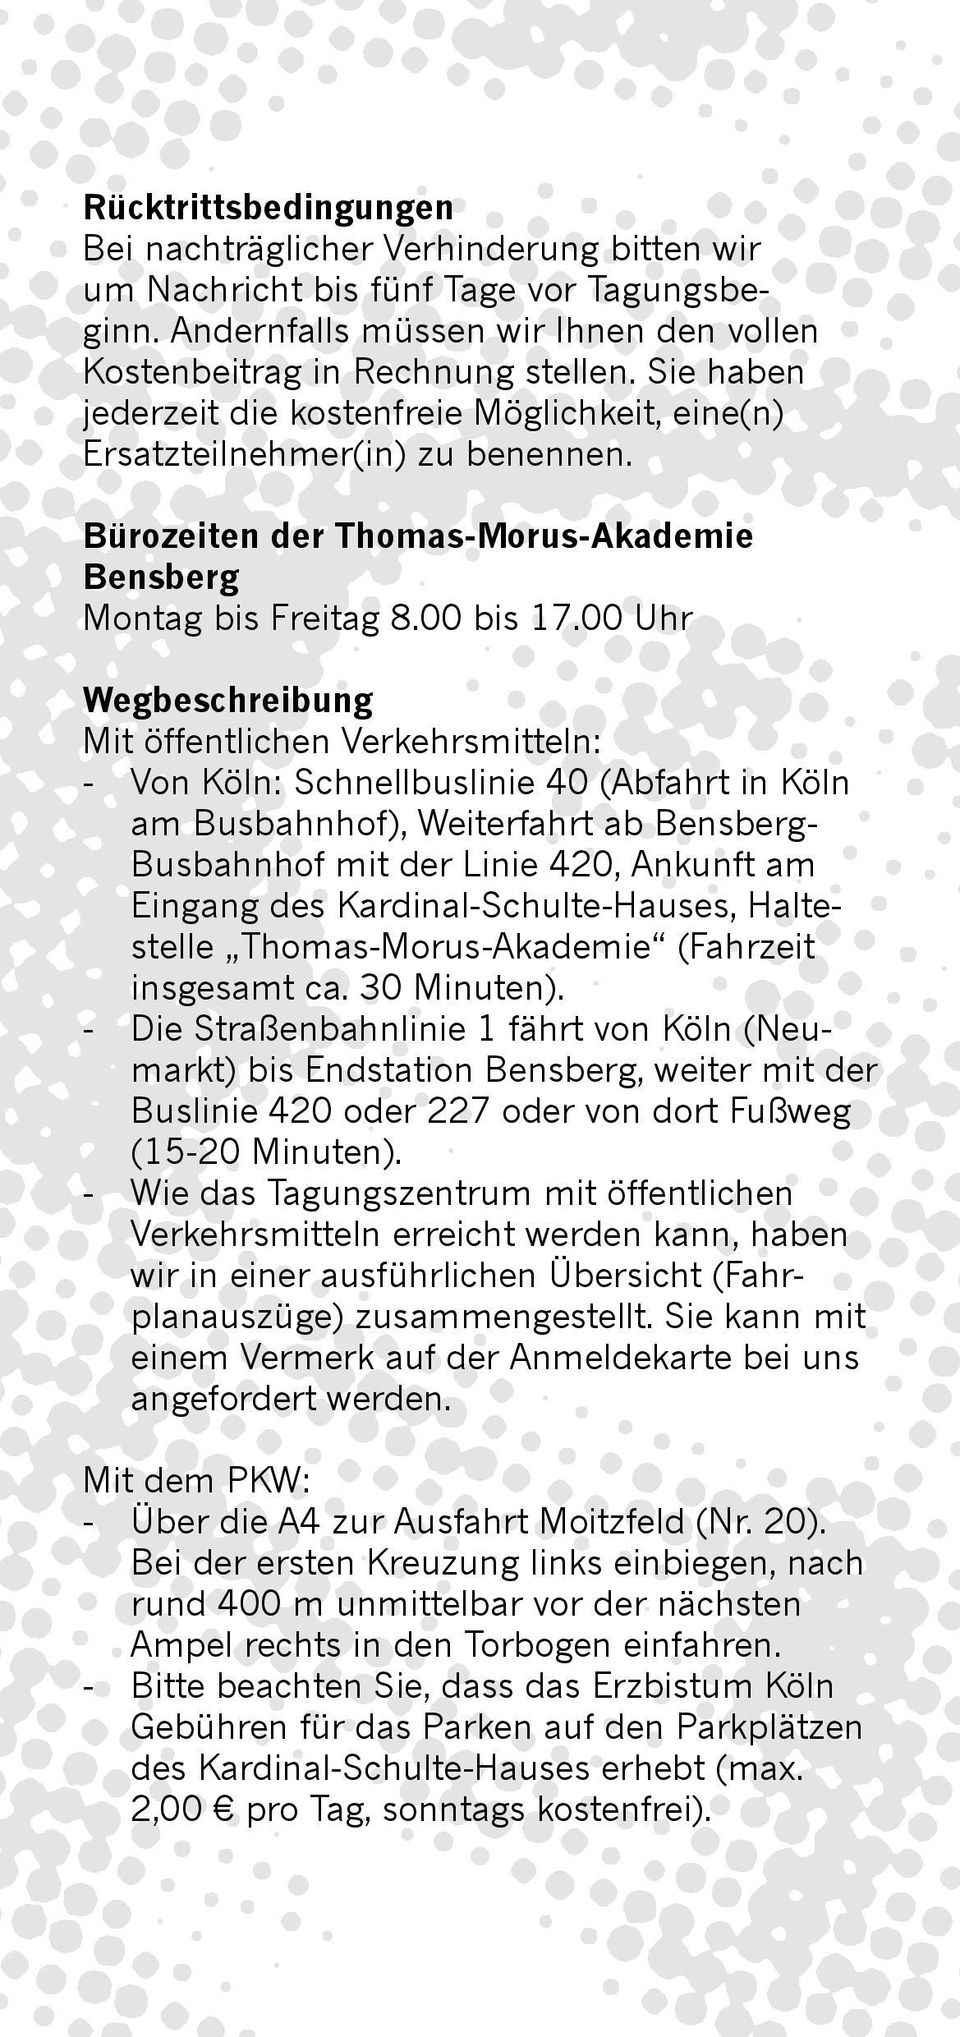 00 Uhr Wegbeschreibung Mit öffentlichen Verkehrsmitteln: - Von Köln: Schnellbuslinie 40 (Abfahrt in Köln am Busbahn hof), Weiterfahrt ab Bensberg- Busbahnhof mit der Linie 420, Ankunft am Eingang des